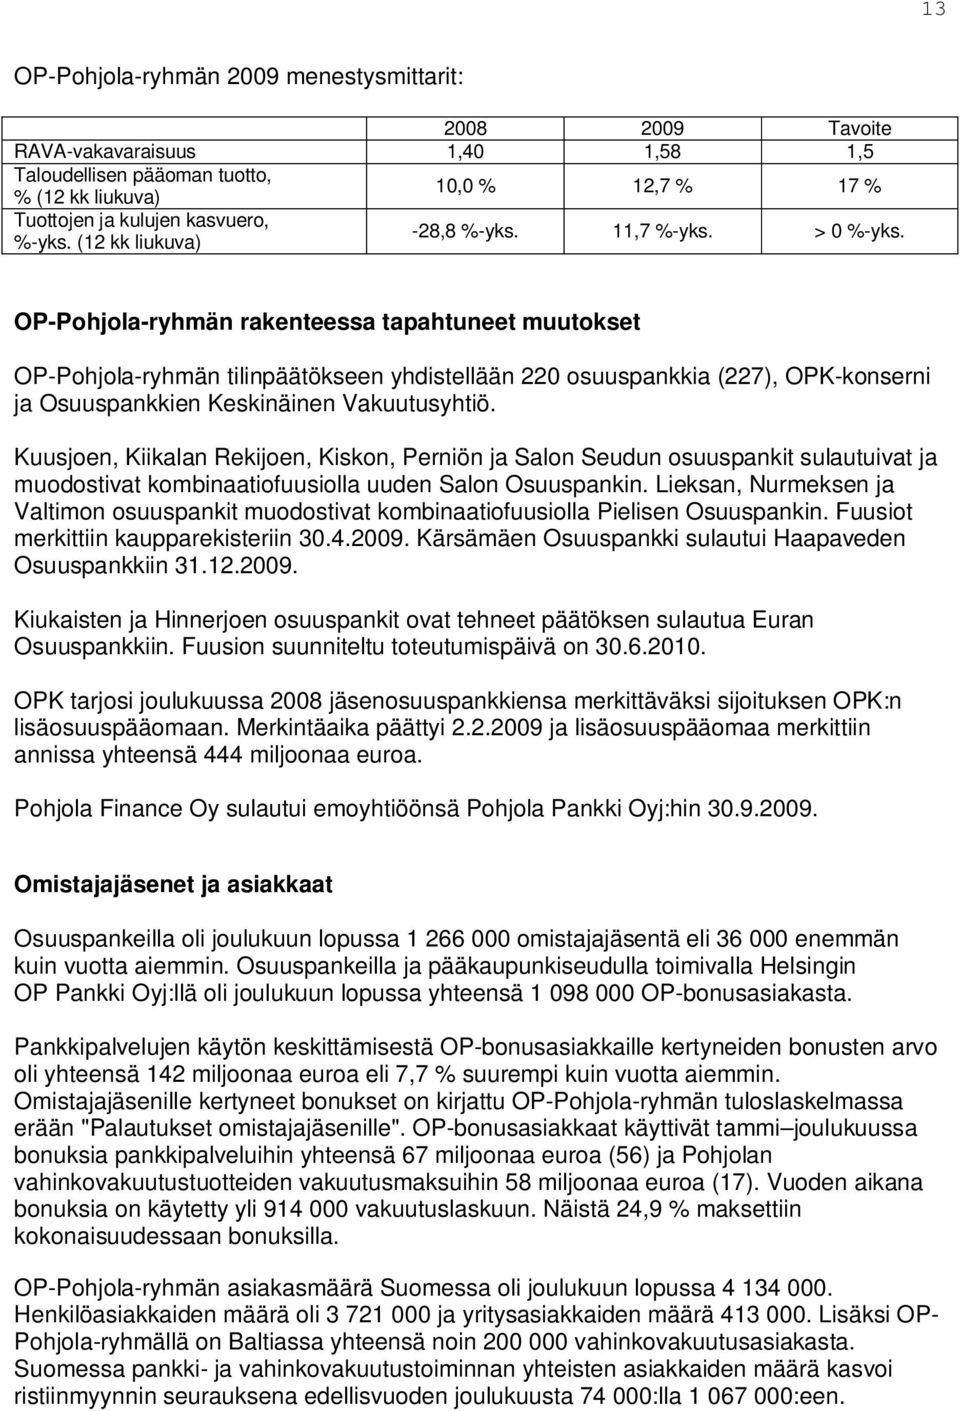 OP-Pohjola-ryhmän rakenteessa tapahtuneet muutokset OP-Pohjola-ryhmän tilinpäätökseen yhdistellään 220 osuuspankkia (227), OPK-konserni ja Osuuspankkien Keskinäinen Vakuutusyhtiö.